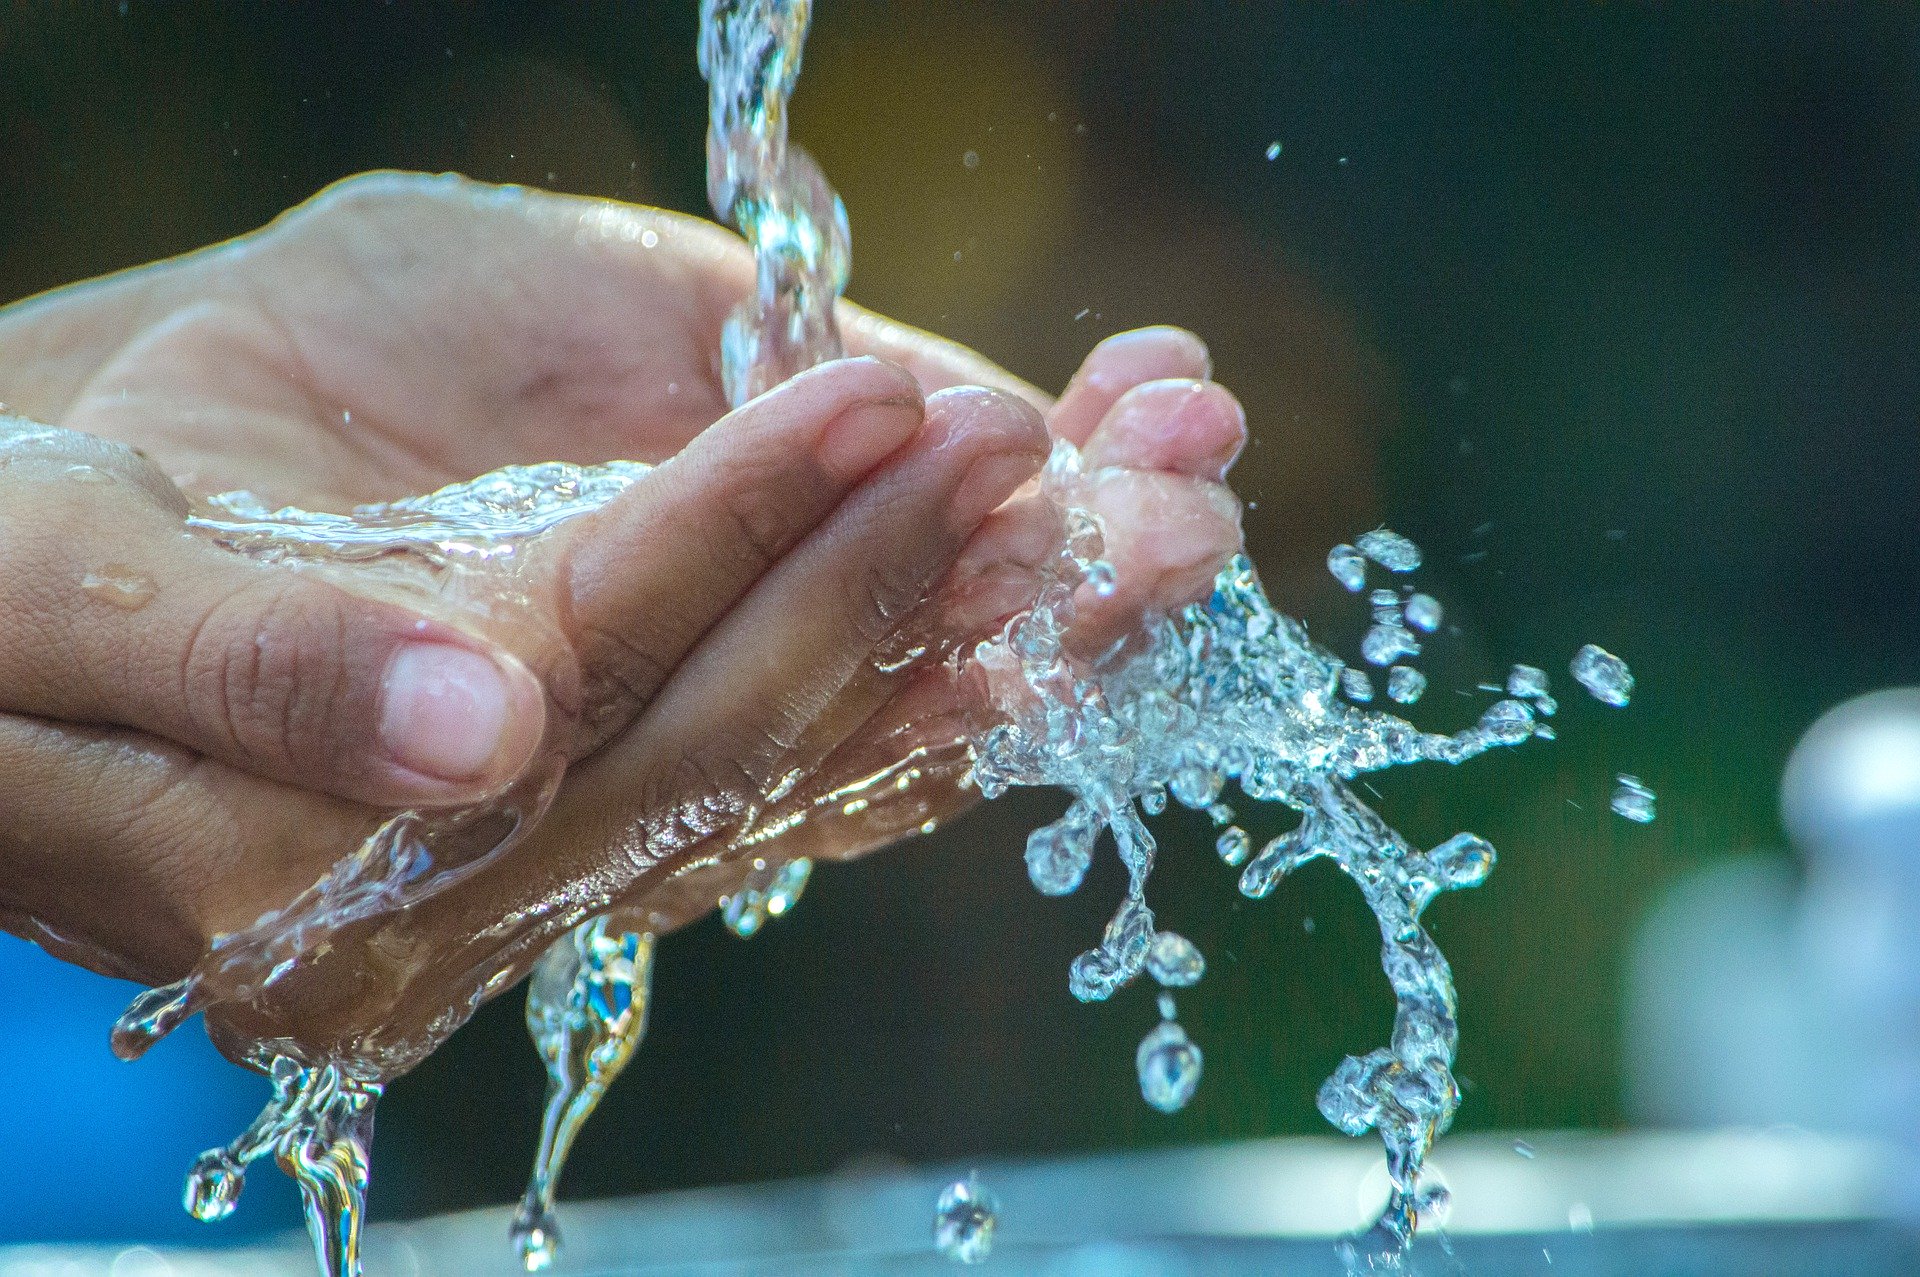 Das Bild zeigt zwei Hände, die geformt zu einer Schale,sauberes Wasser auffangen.